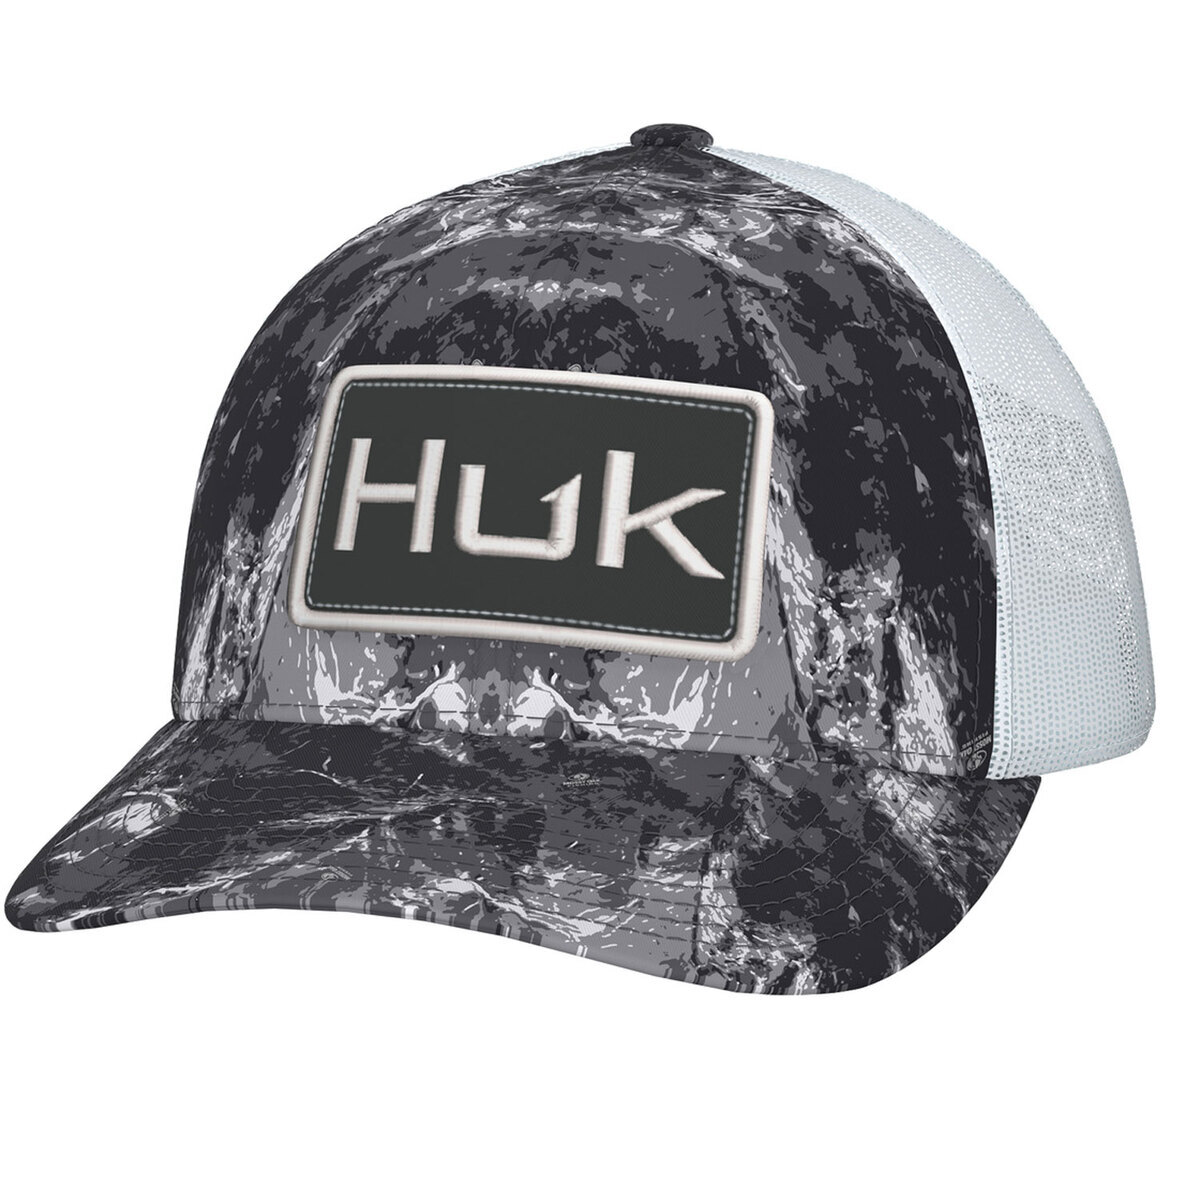 https://www.sportsmans.com/medias/huk-mens-mossy-oak-stormwater-logo-trucker-hat-midnight-one-size-fits-most-1837986-1.jpg?context=bWFzdGVyfGltYWdlc3wyMDI4Njd8aW1hZ2UvanBlZ3xhRGswTDJnd1lTOHhNakEyTURZM09ESXlOVGsxTUM4eE1qQXdMV052Ym5abGNuTnBiMjVHYjNKdFlYUmZZbUZ6WlMxamIyNTJaWEp6YVc5dVJtOXliV0YwWDNOdGR5MHhPRE0zT1RnMkxURXVhbkJufDdmYjgwMGEzM2IyY2RhOTA3NWVmZGJjMWIzZDZmODAzZTBmMzYzNjJkNGM5YTM5ZjY5NGI1OTE5ZWE3OTQ0NWY